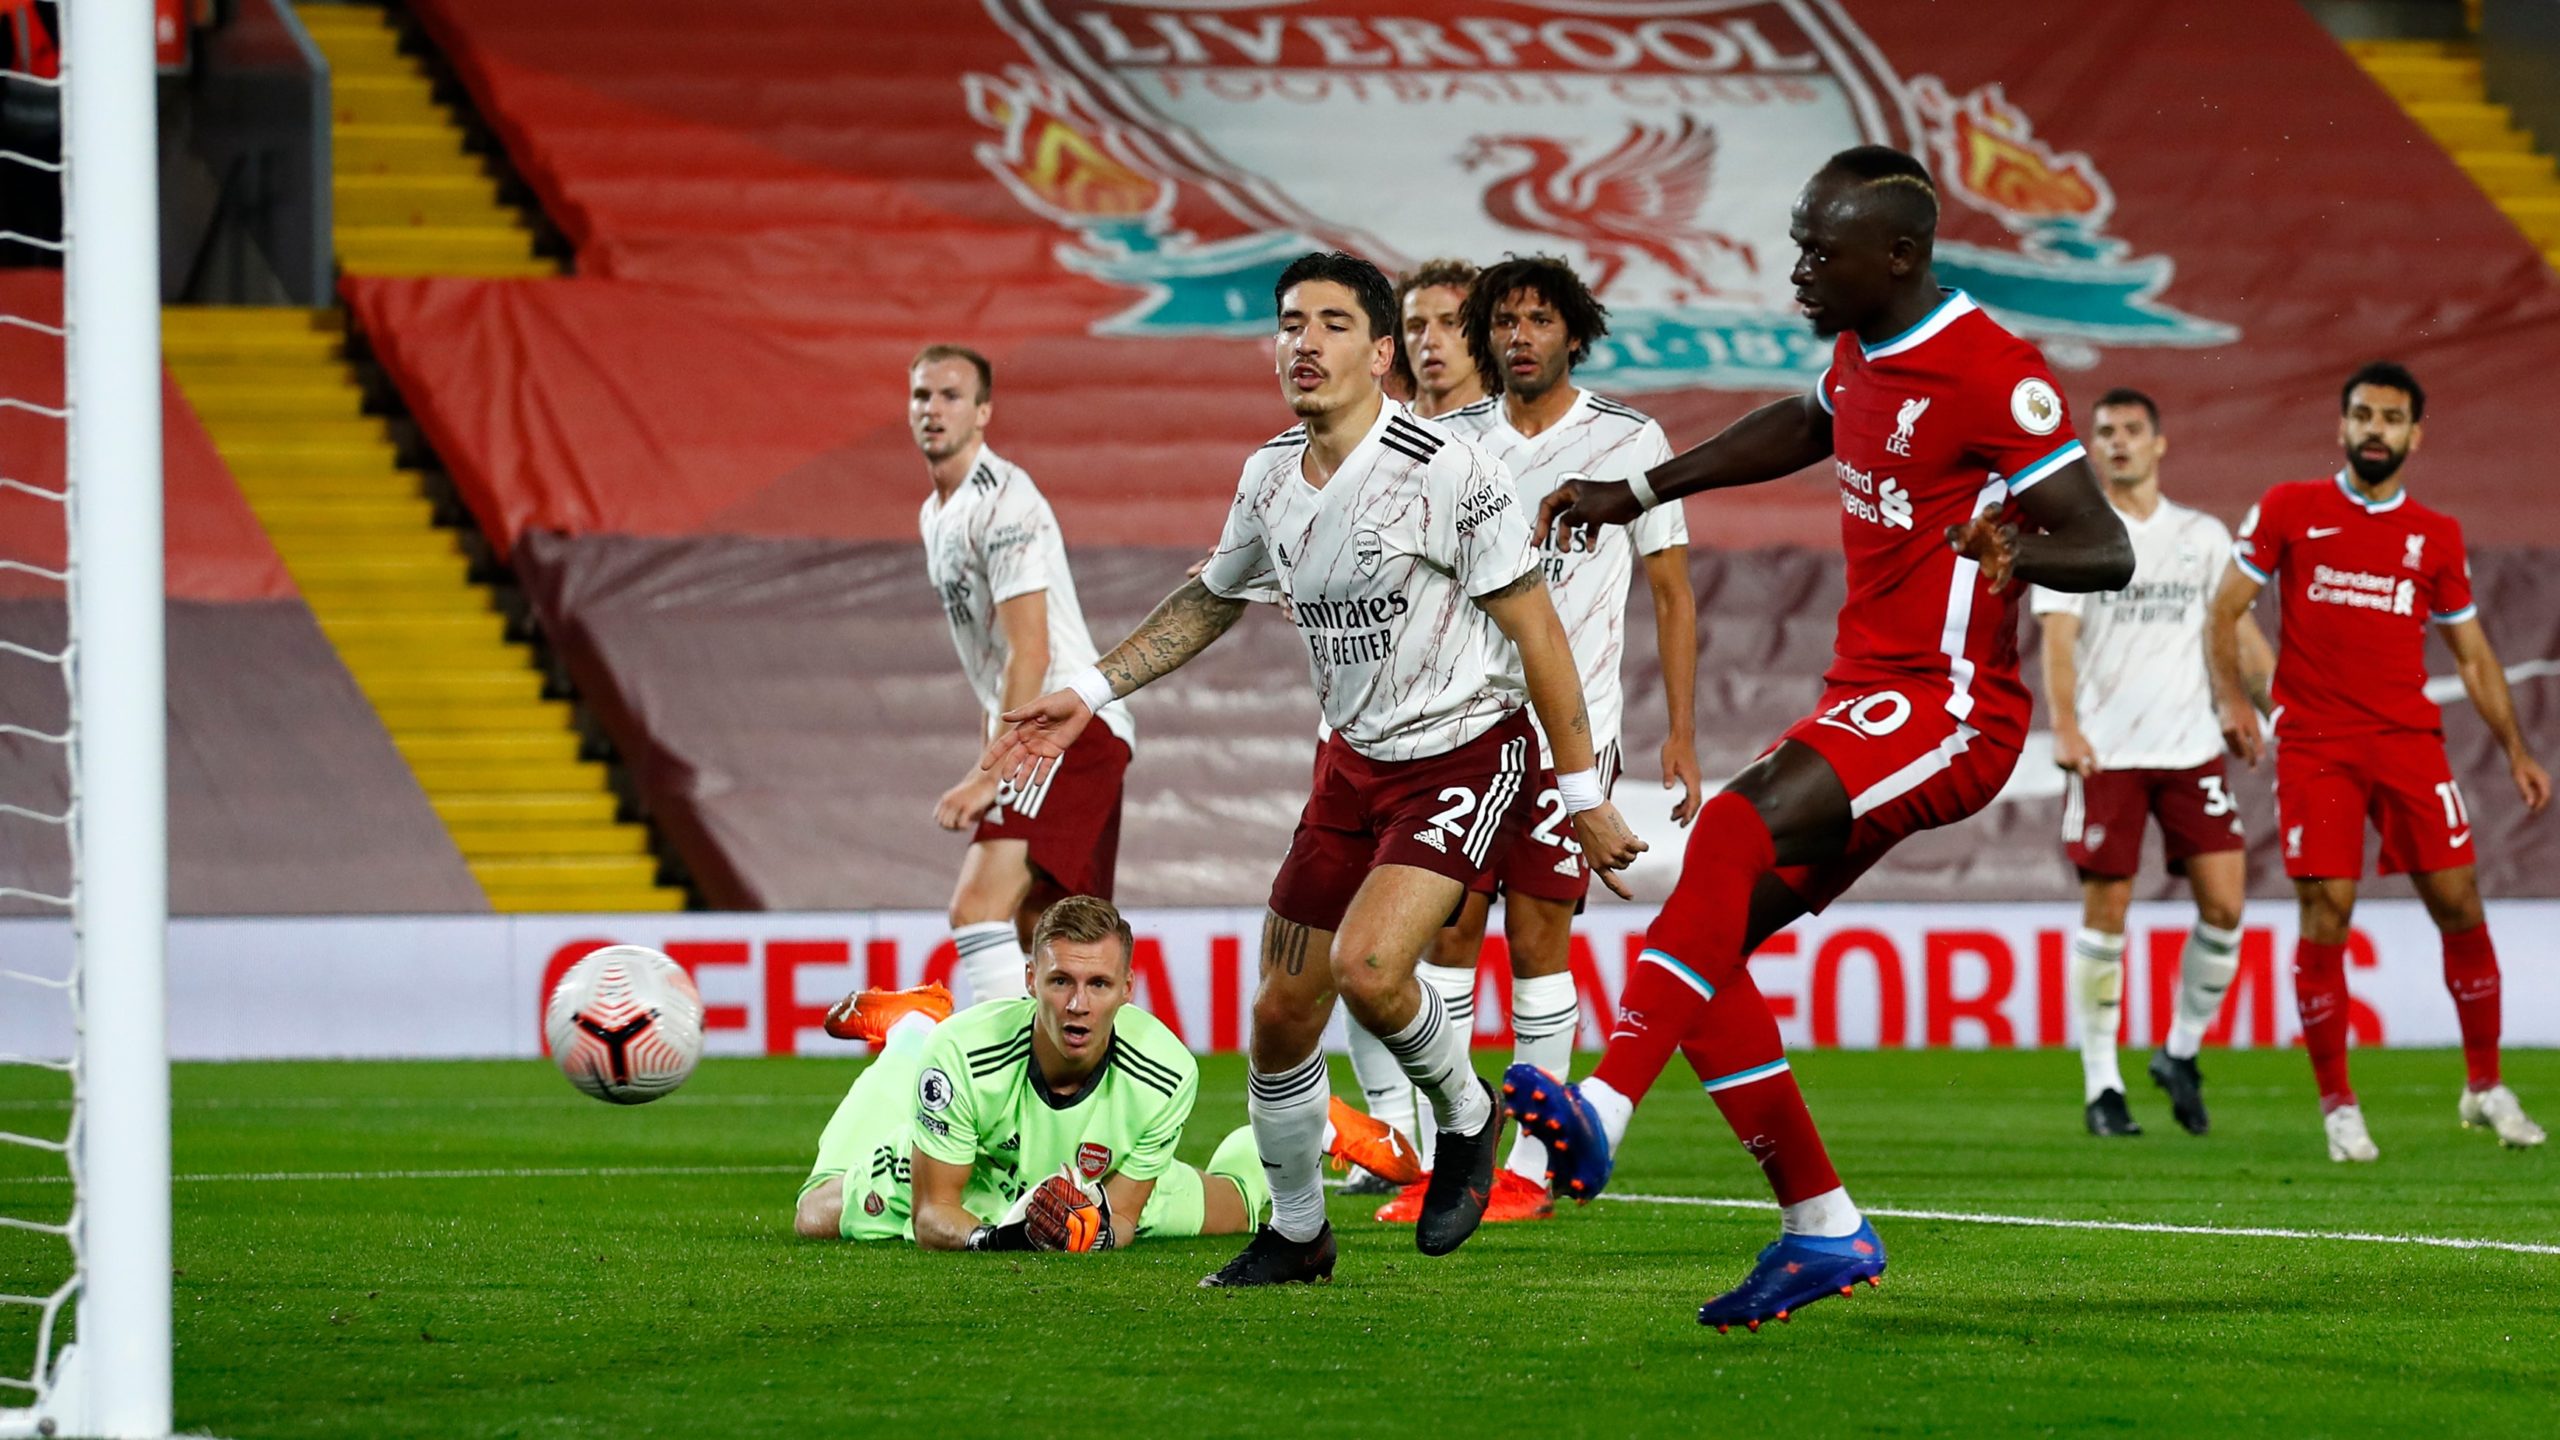 Liverpool Arsenal 3-1, sức mạnh nhà vô địch - Sadio Mane